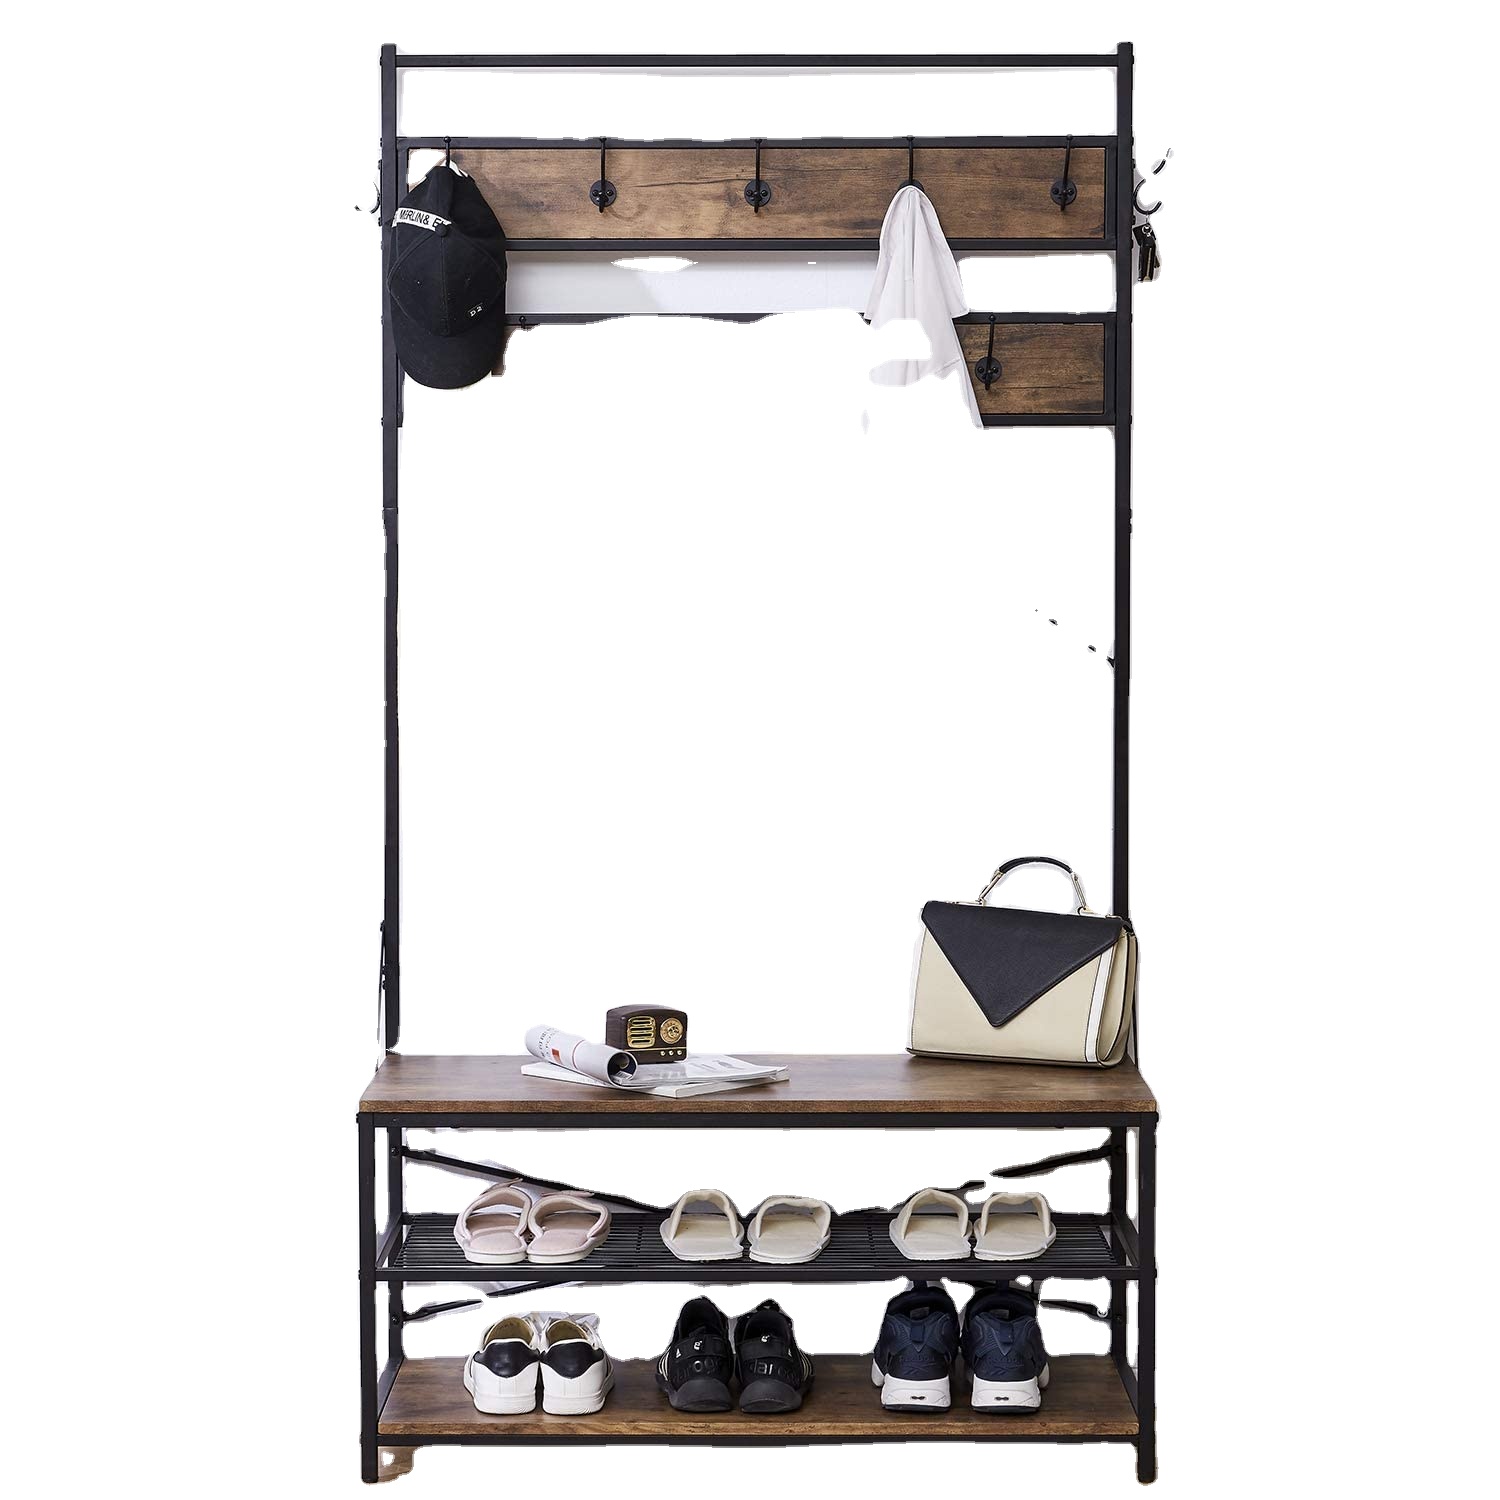 Metalowy drewniany wieszak na ubrania w stylu vintage, w przedpokoju, z miejscem do przechowywania butów i odpowiedni do salonu